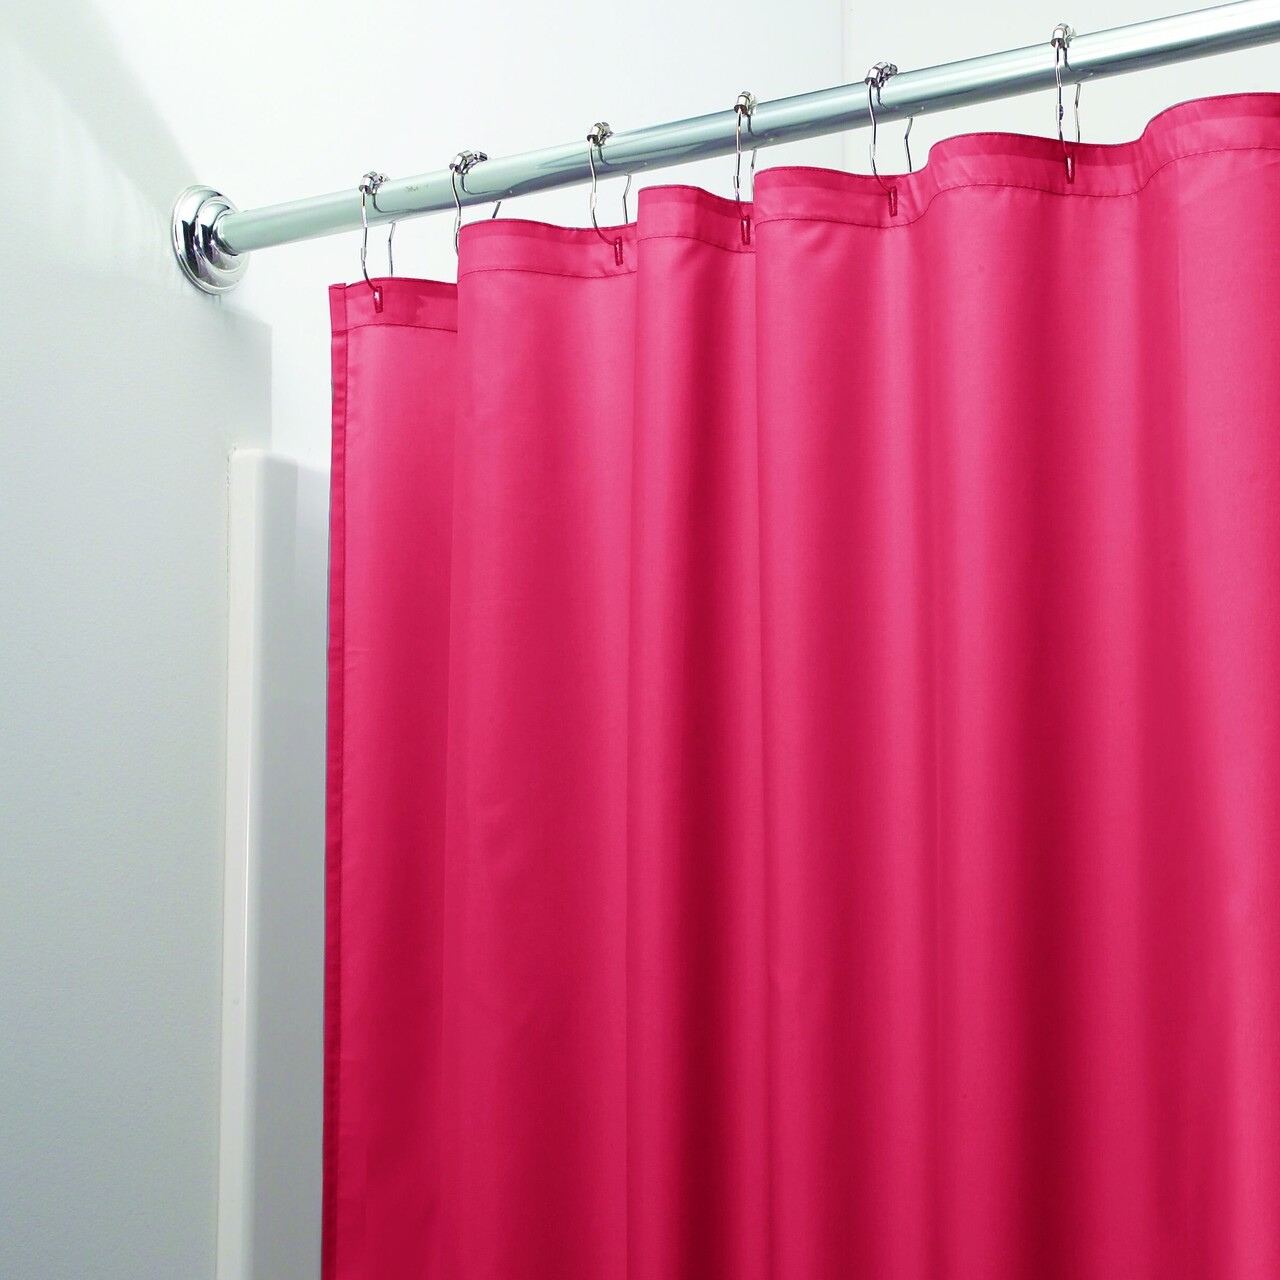 Poli zuhanyfüggöny, iDesign, 183x183 cm, poliészter, piros